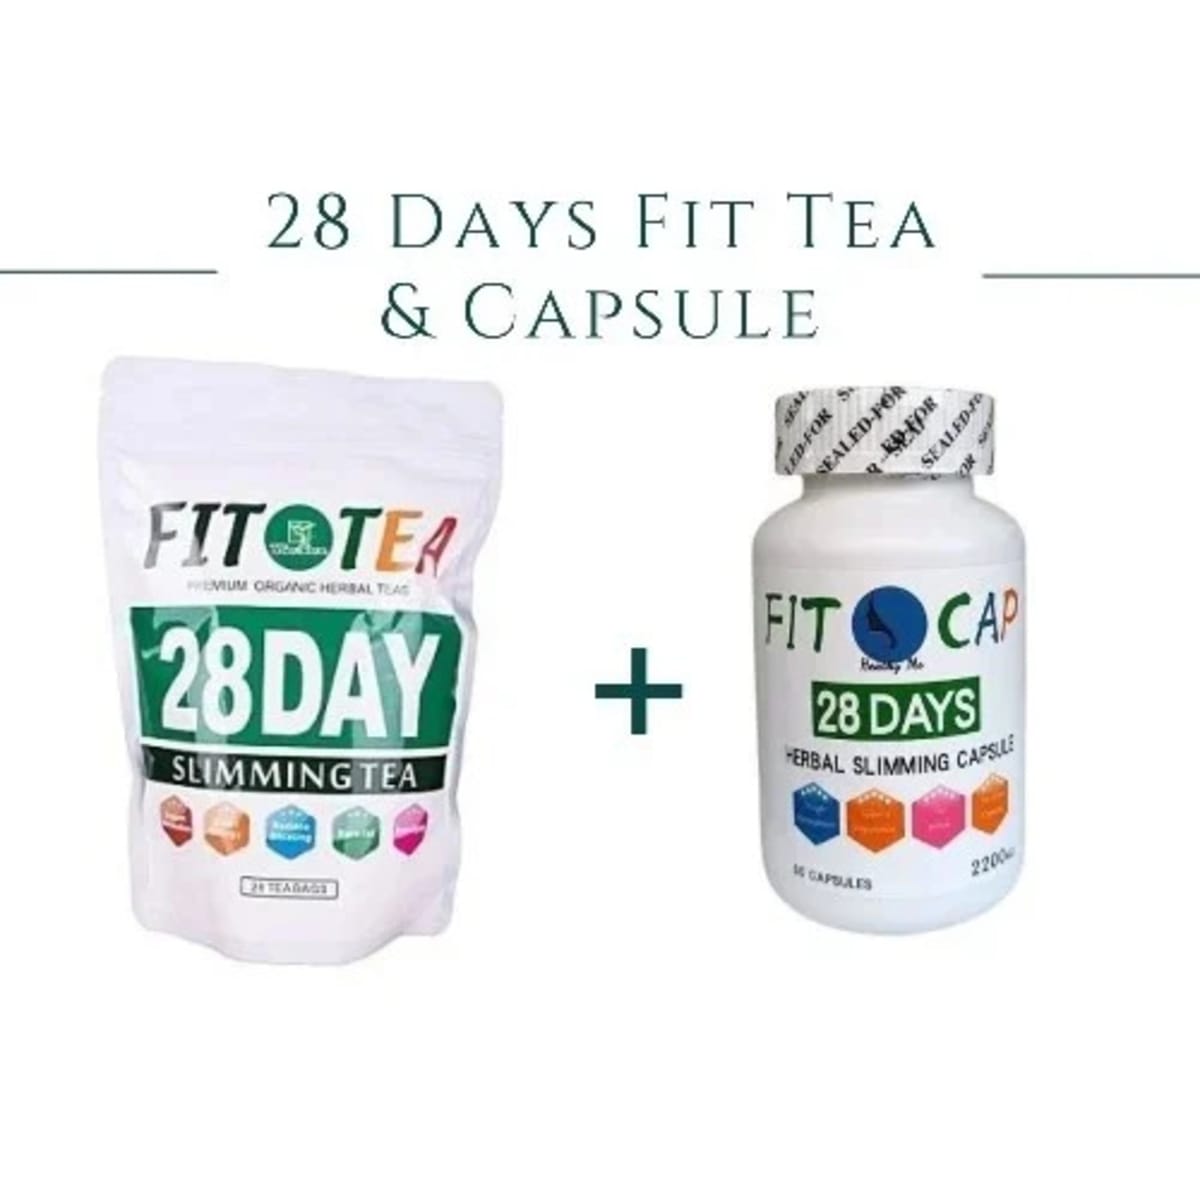 FIT TEA (28 DAYS SLIMMING TEA) 